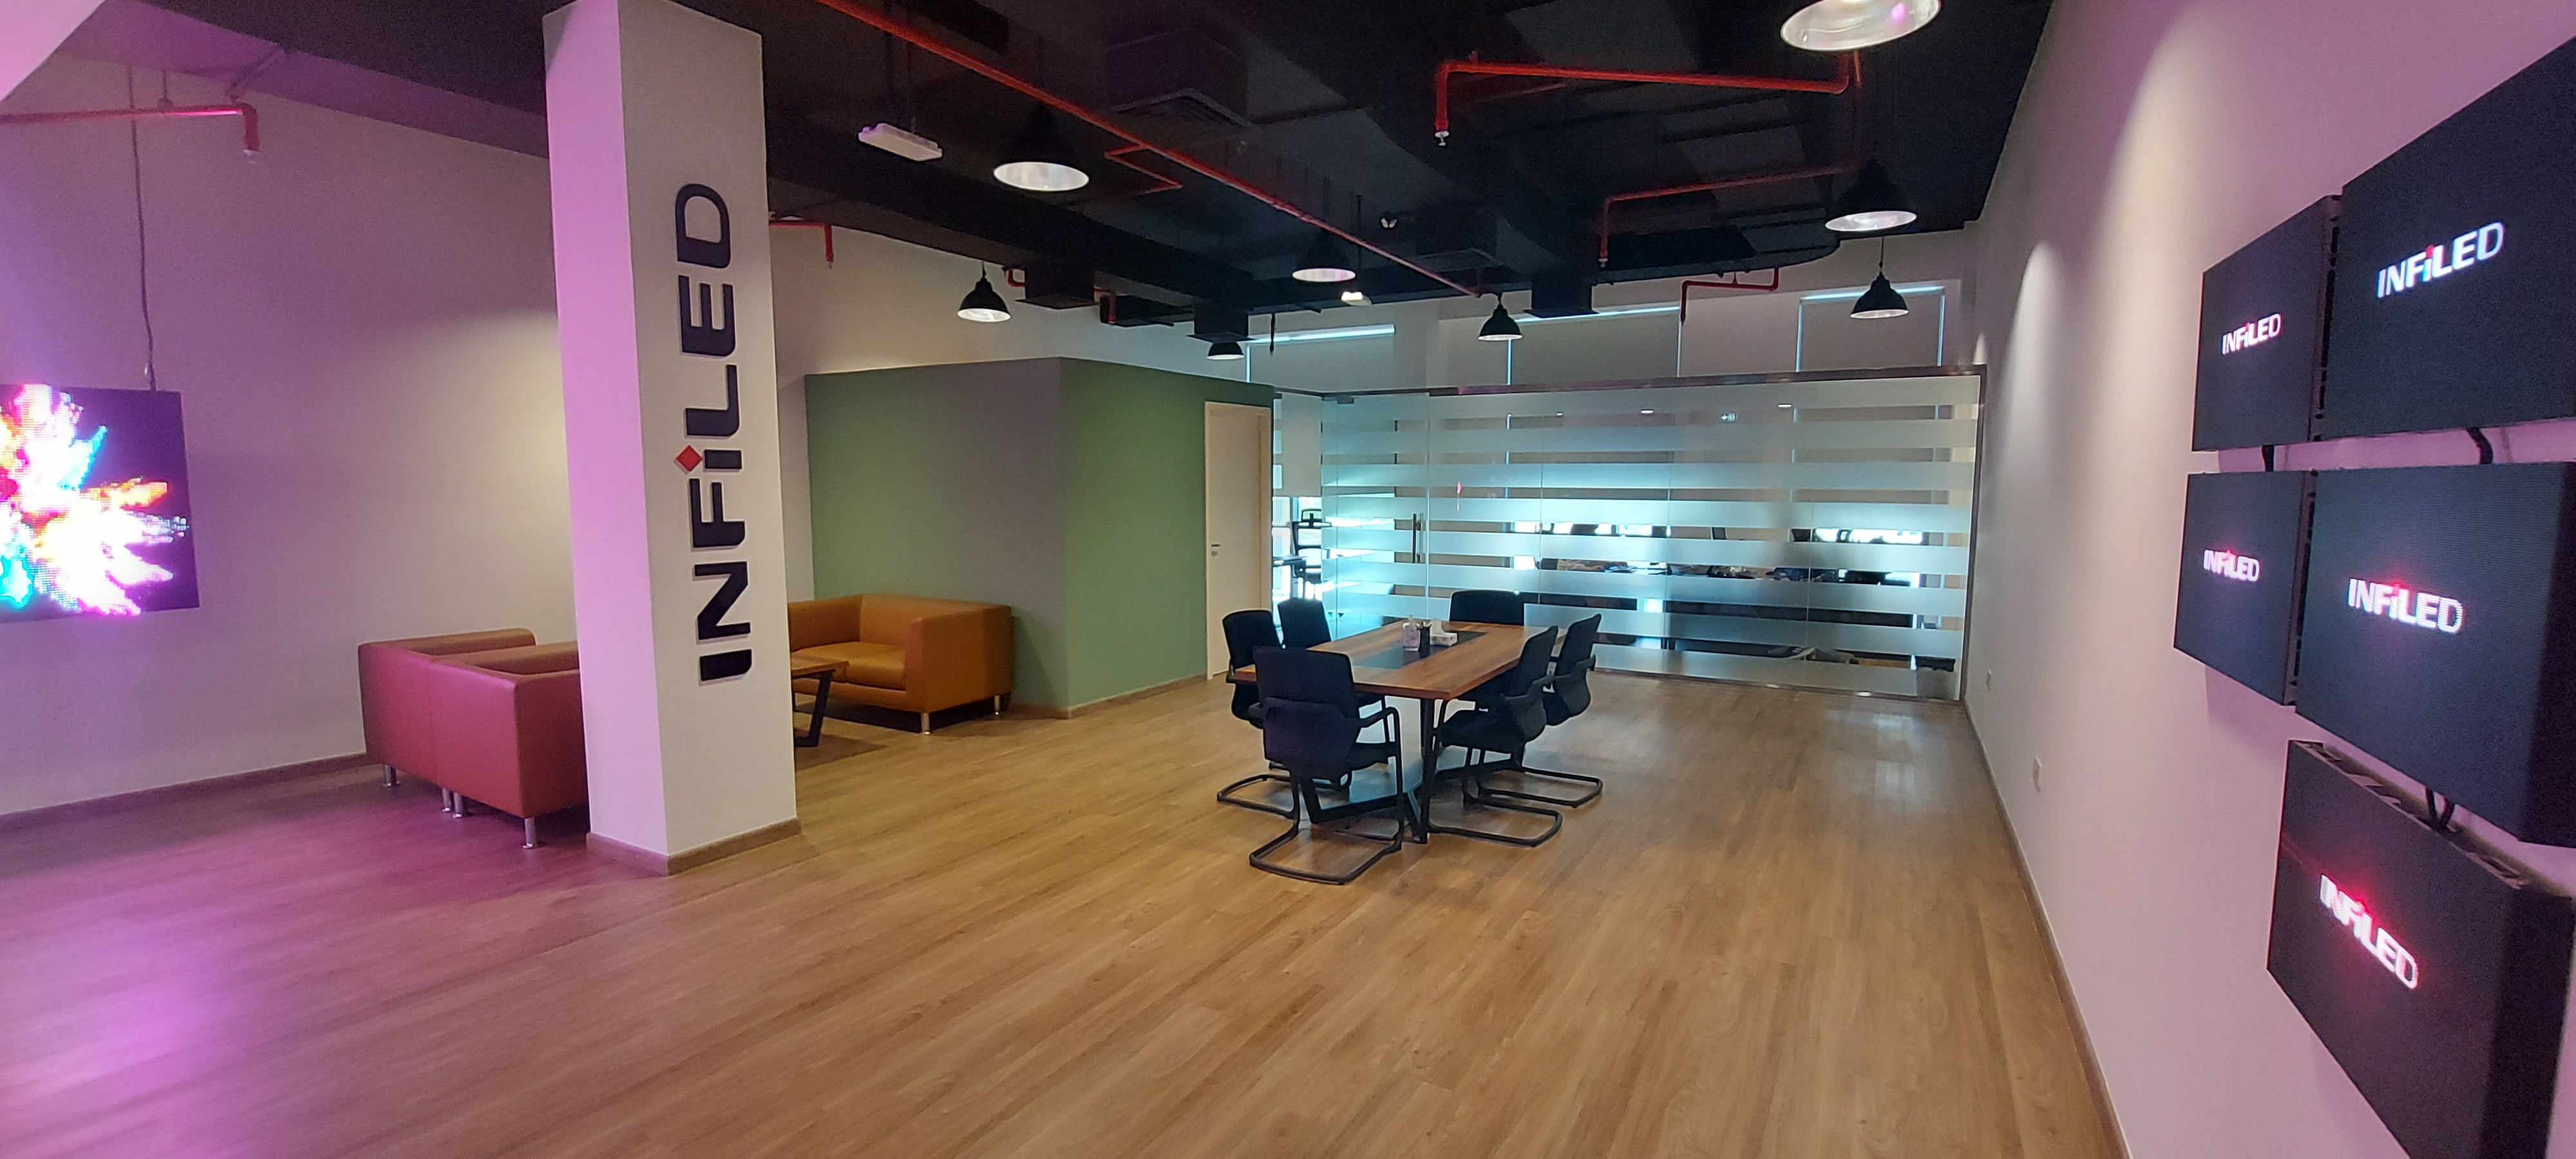 INFiLED Office Dubai